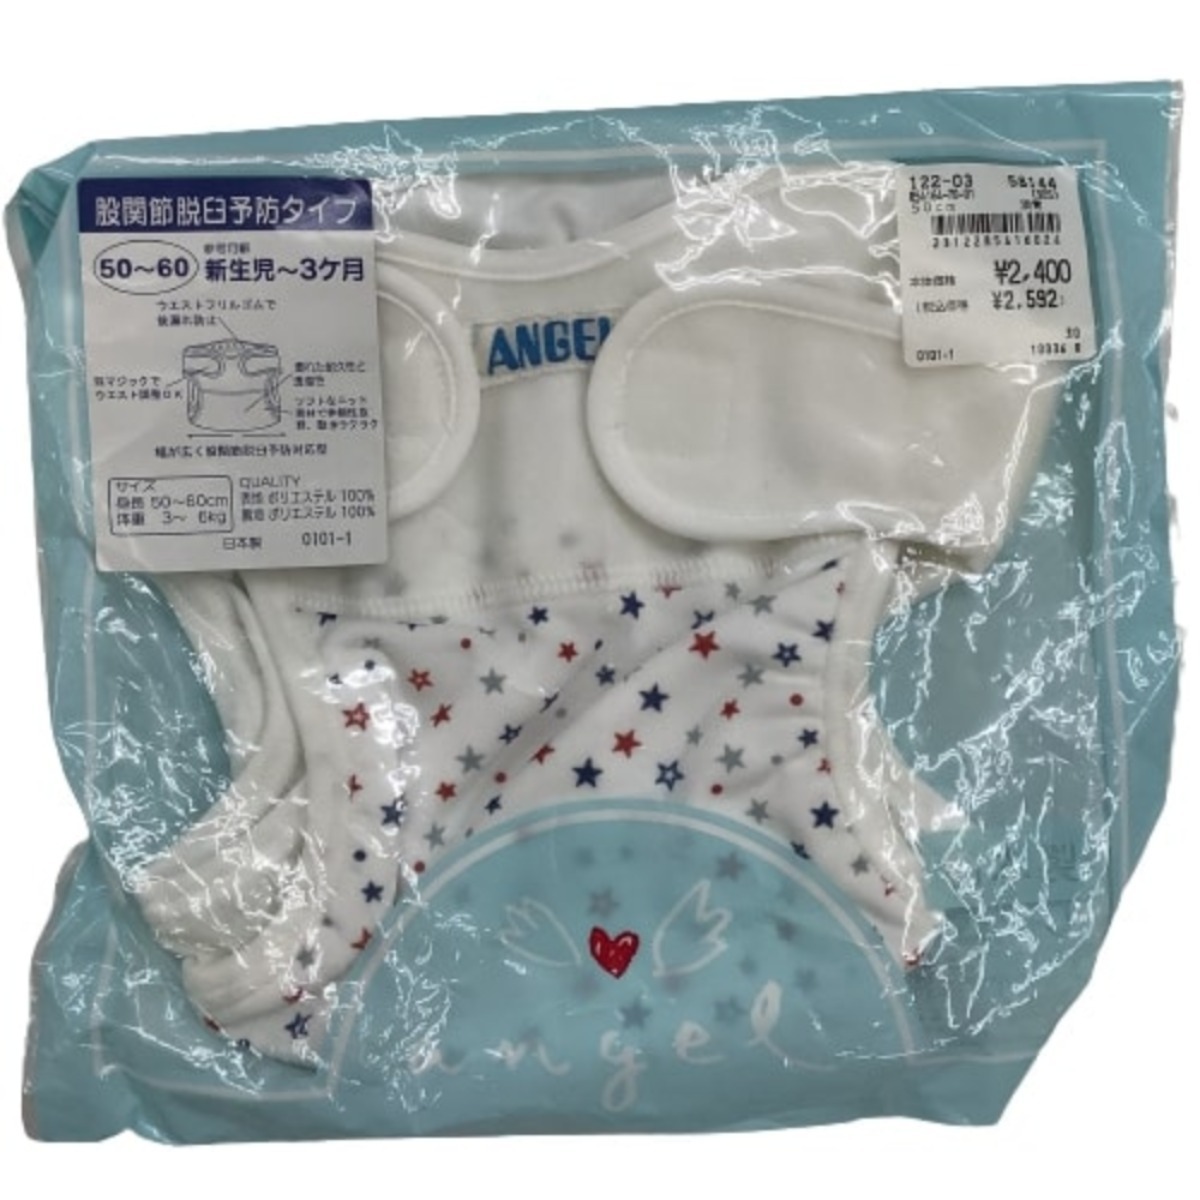 !! angelenzeru не использовался товар baby новорожденный ~ тканевые подгузники комплект продажа комплектом Lucky подгузники непромокающие трусики не использовался 